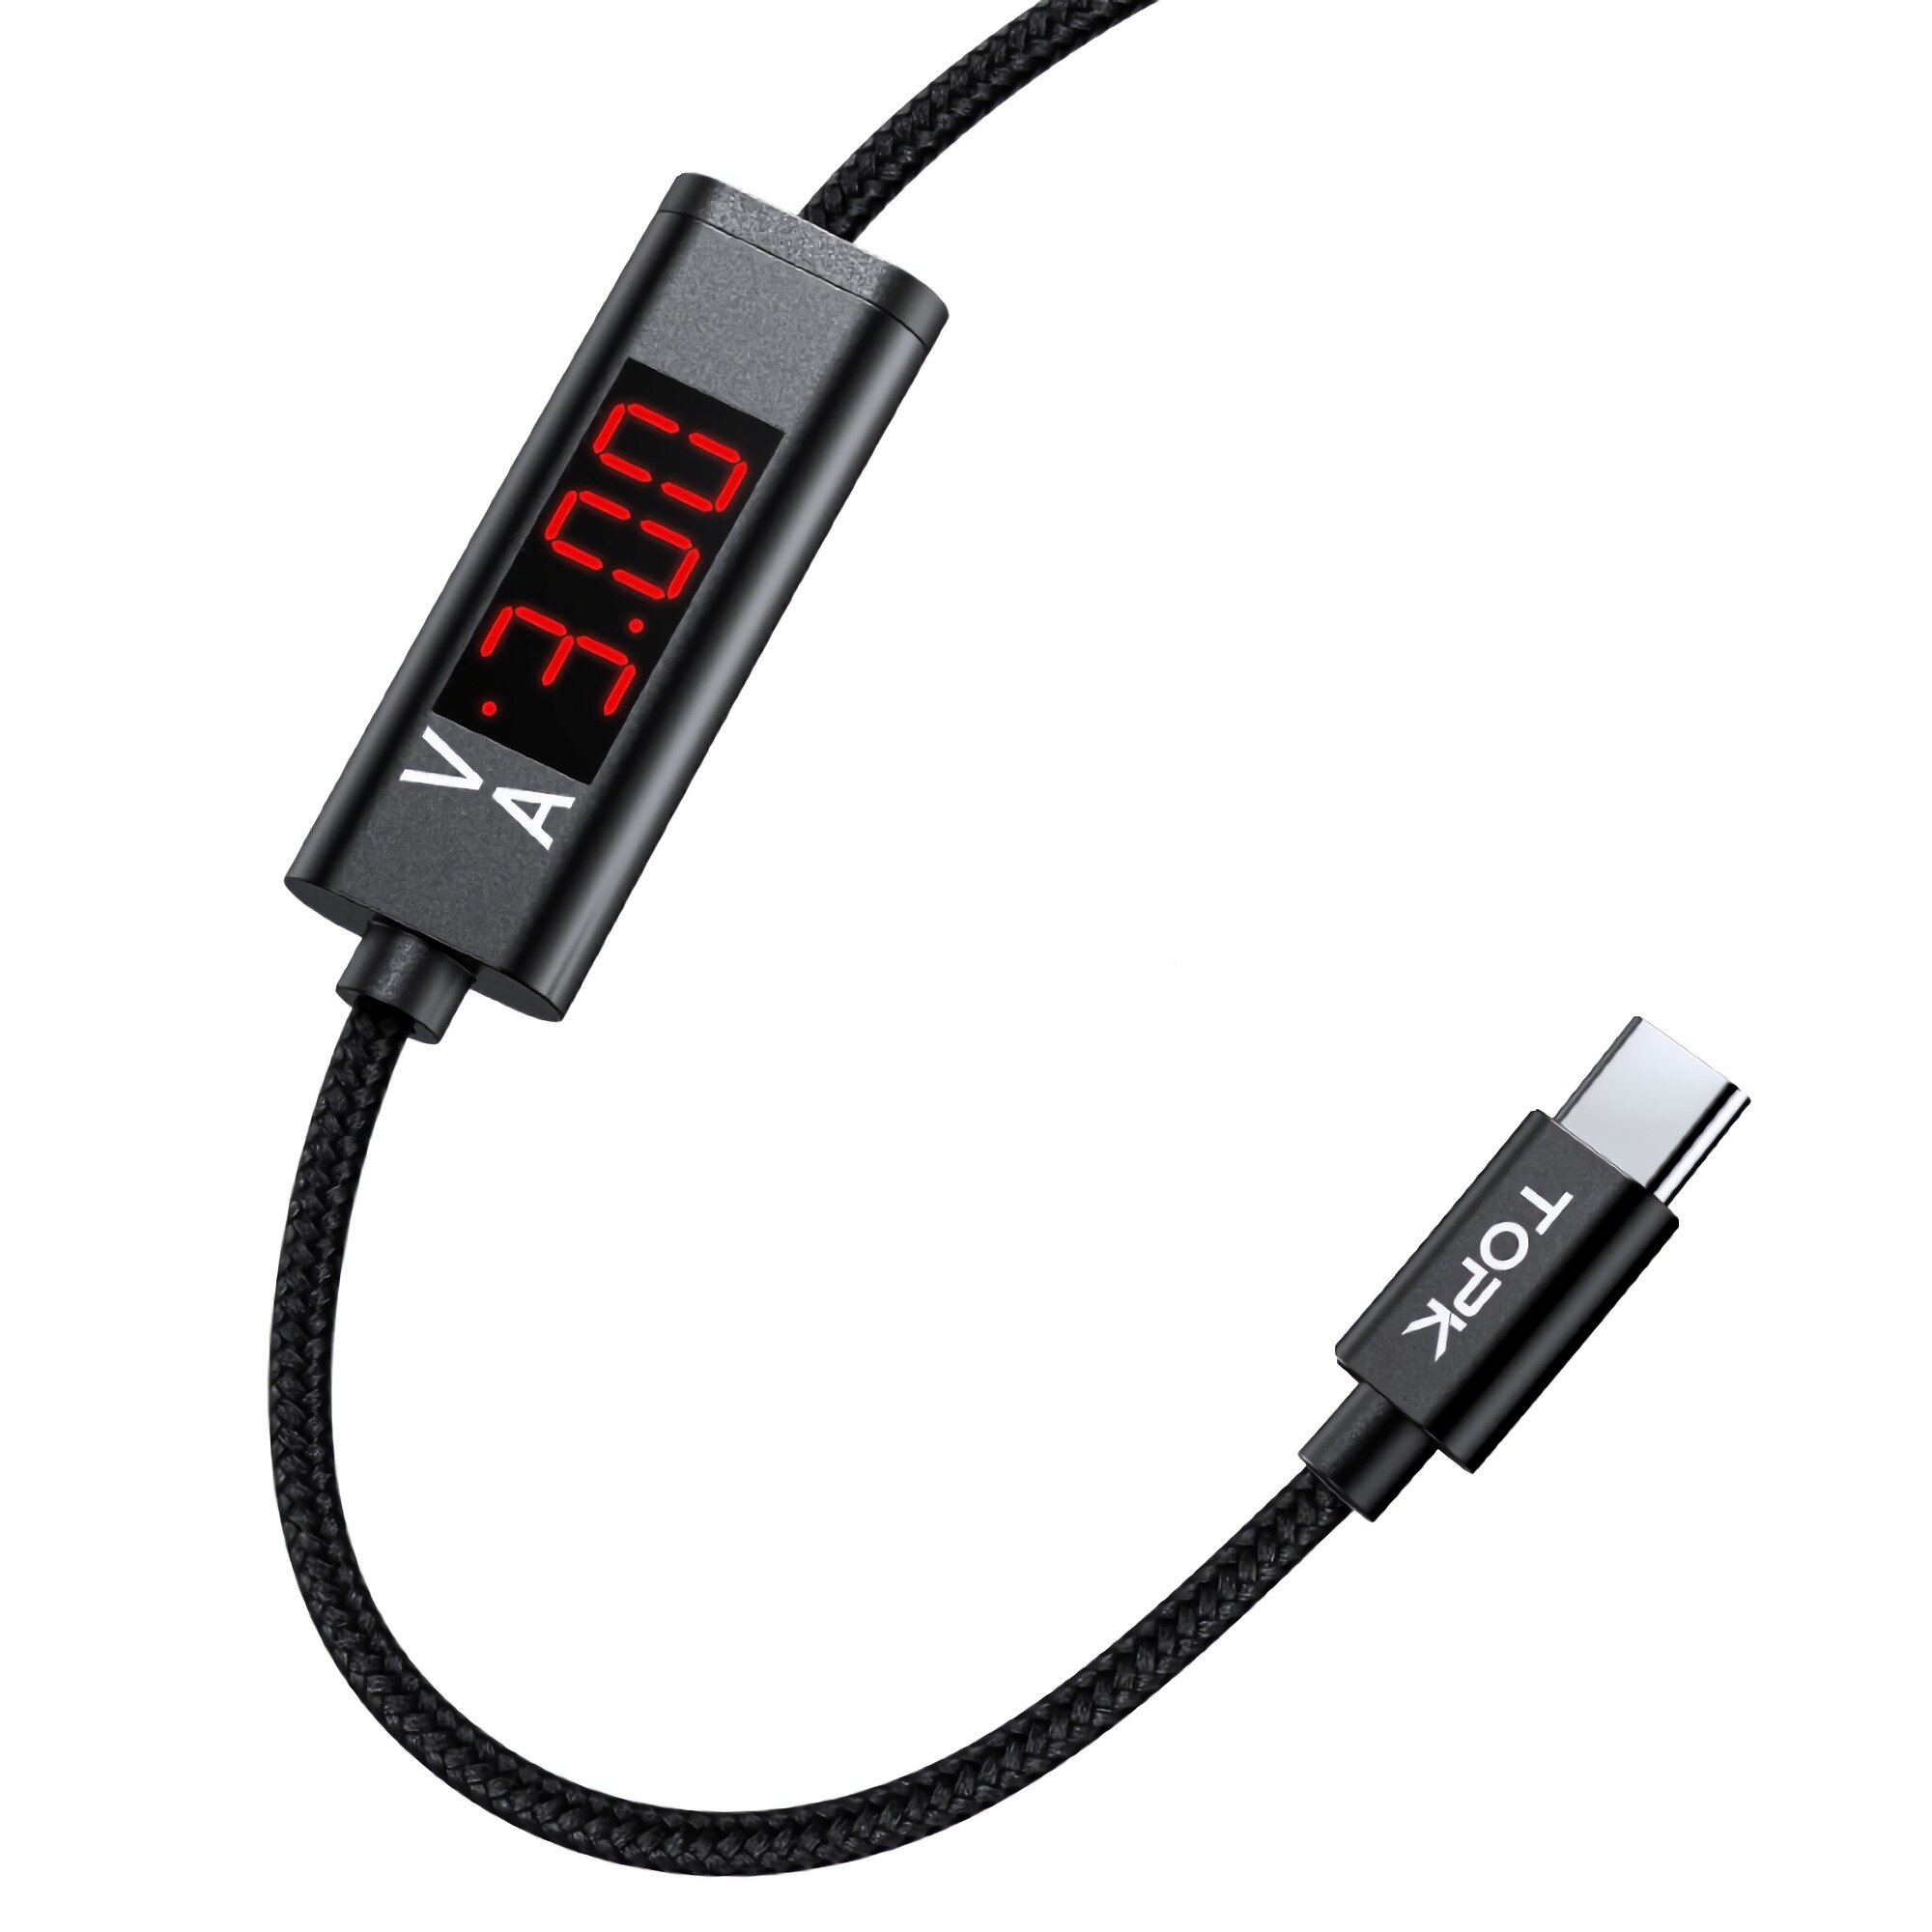 TOPK 3A Snelle oplaadkabel met kabel Digitaal display voor USB / Type C / Iphone